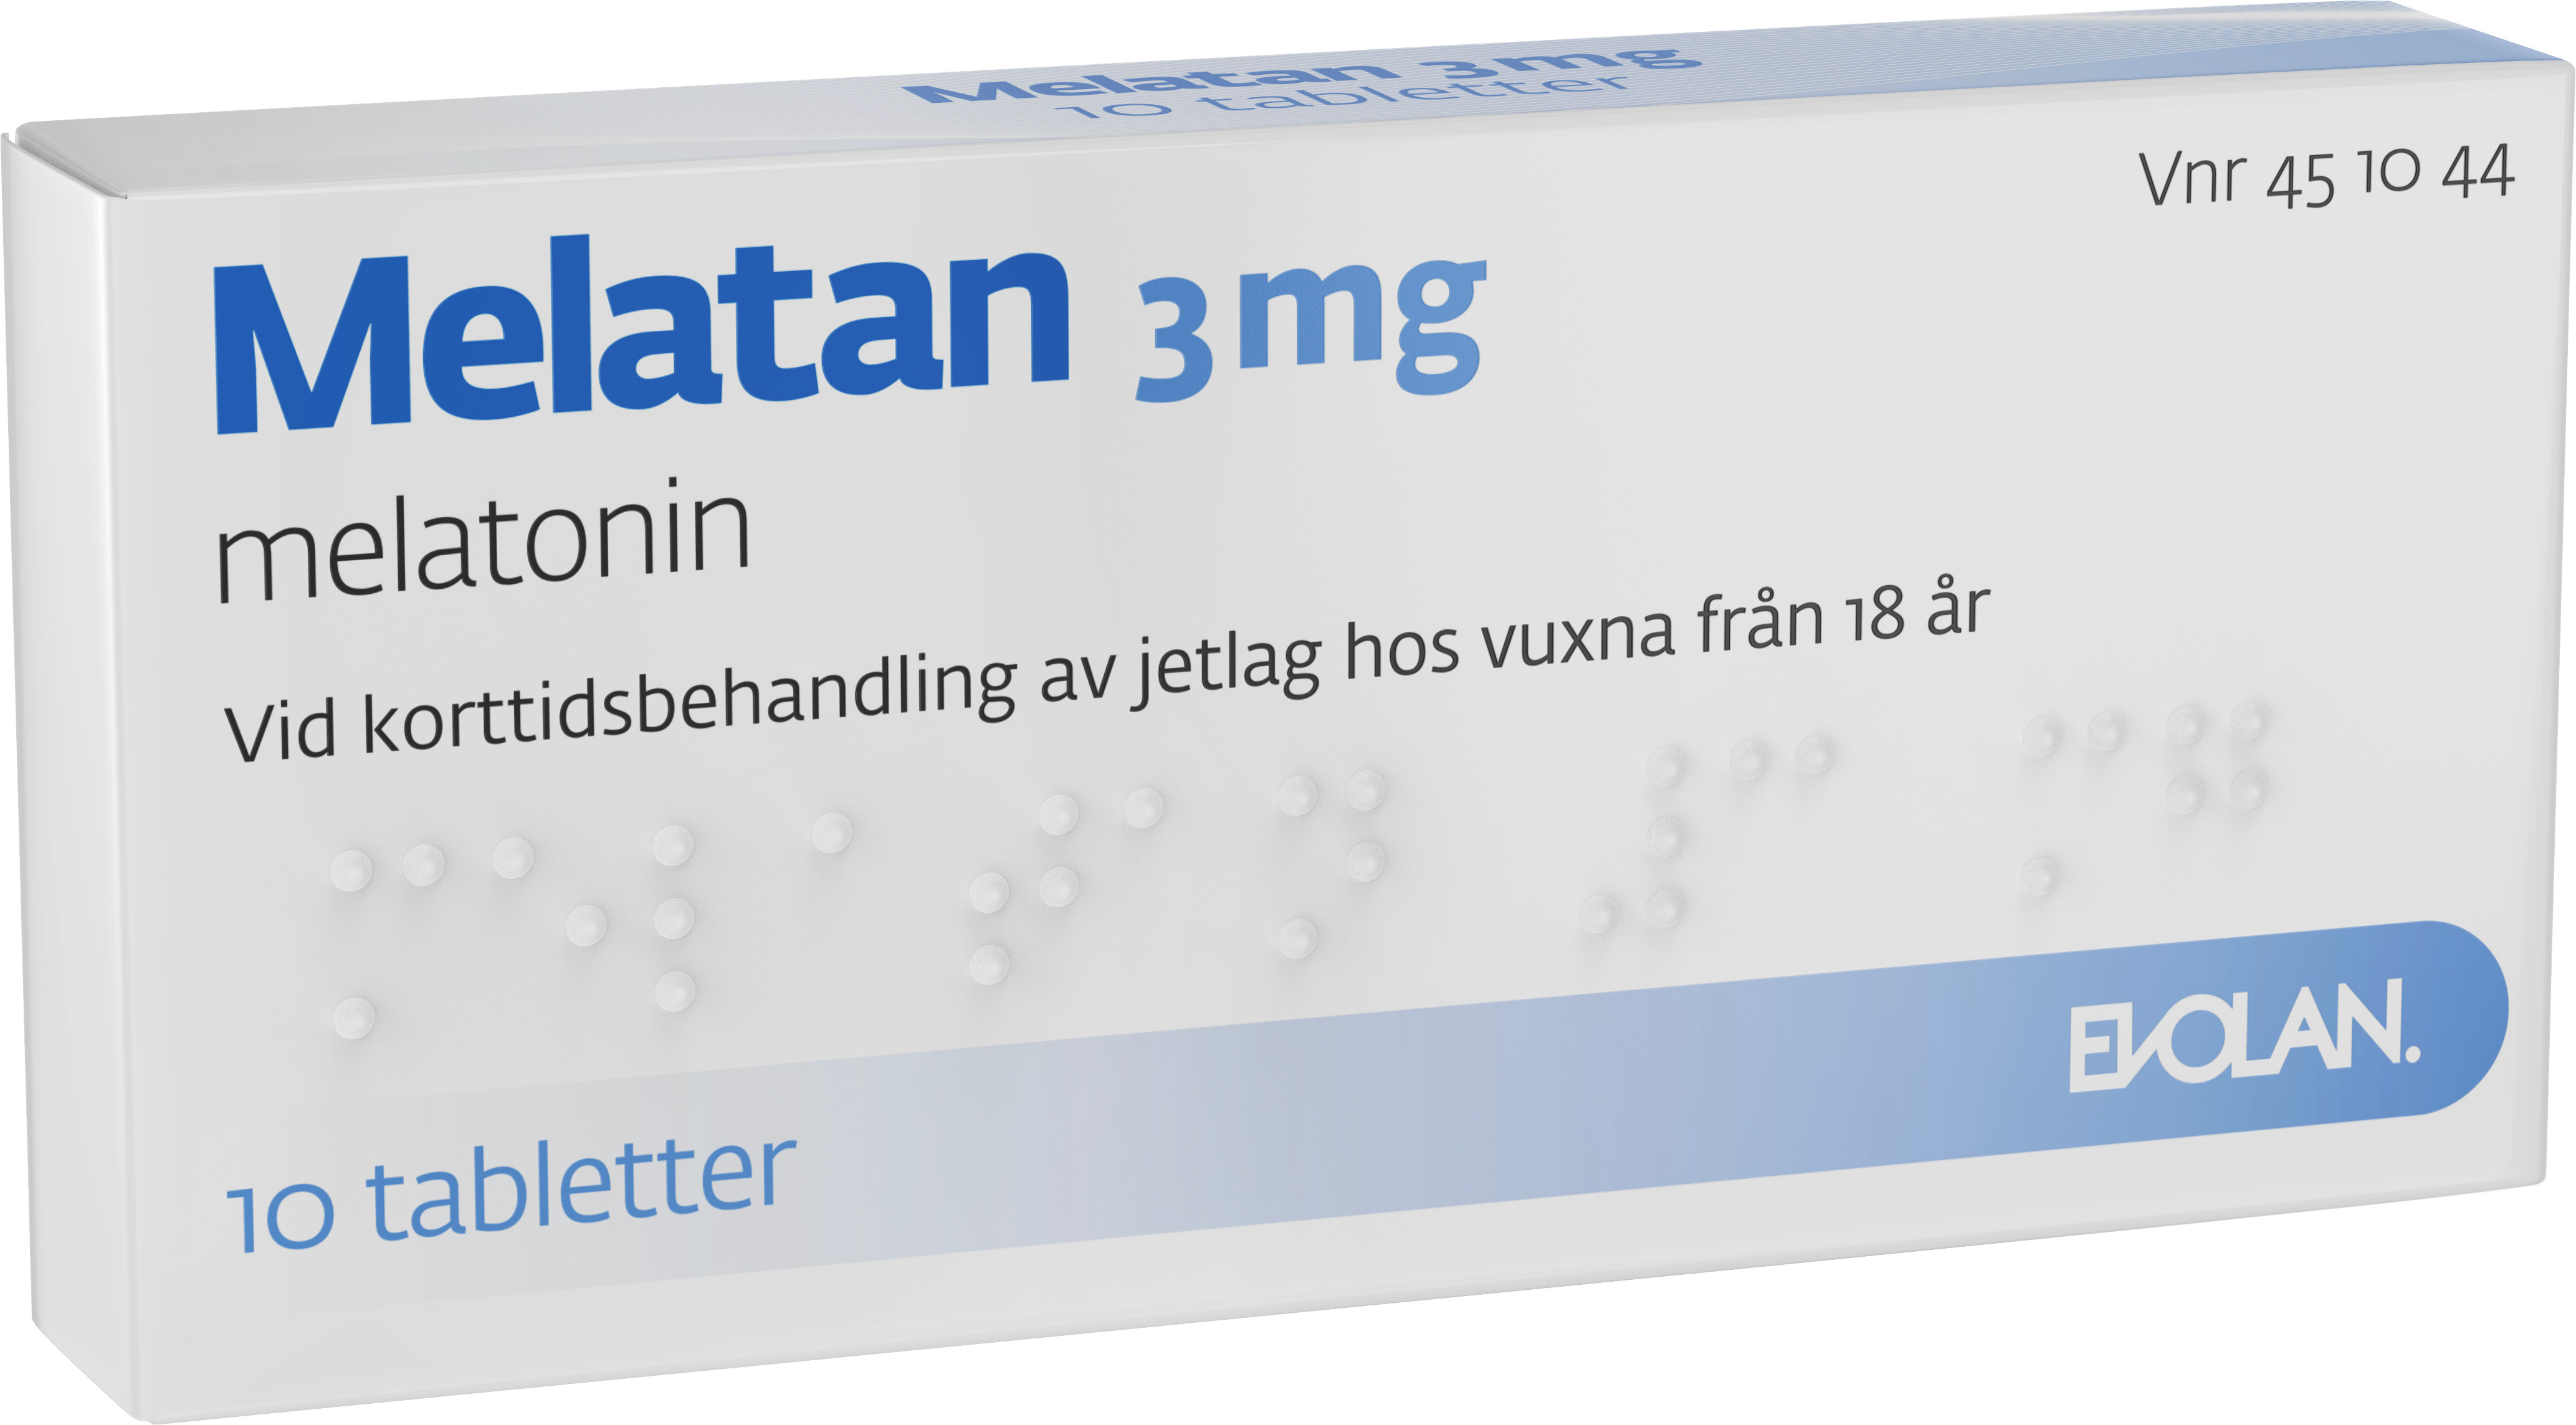 Melatan 3 mg 10 tabletter